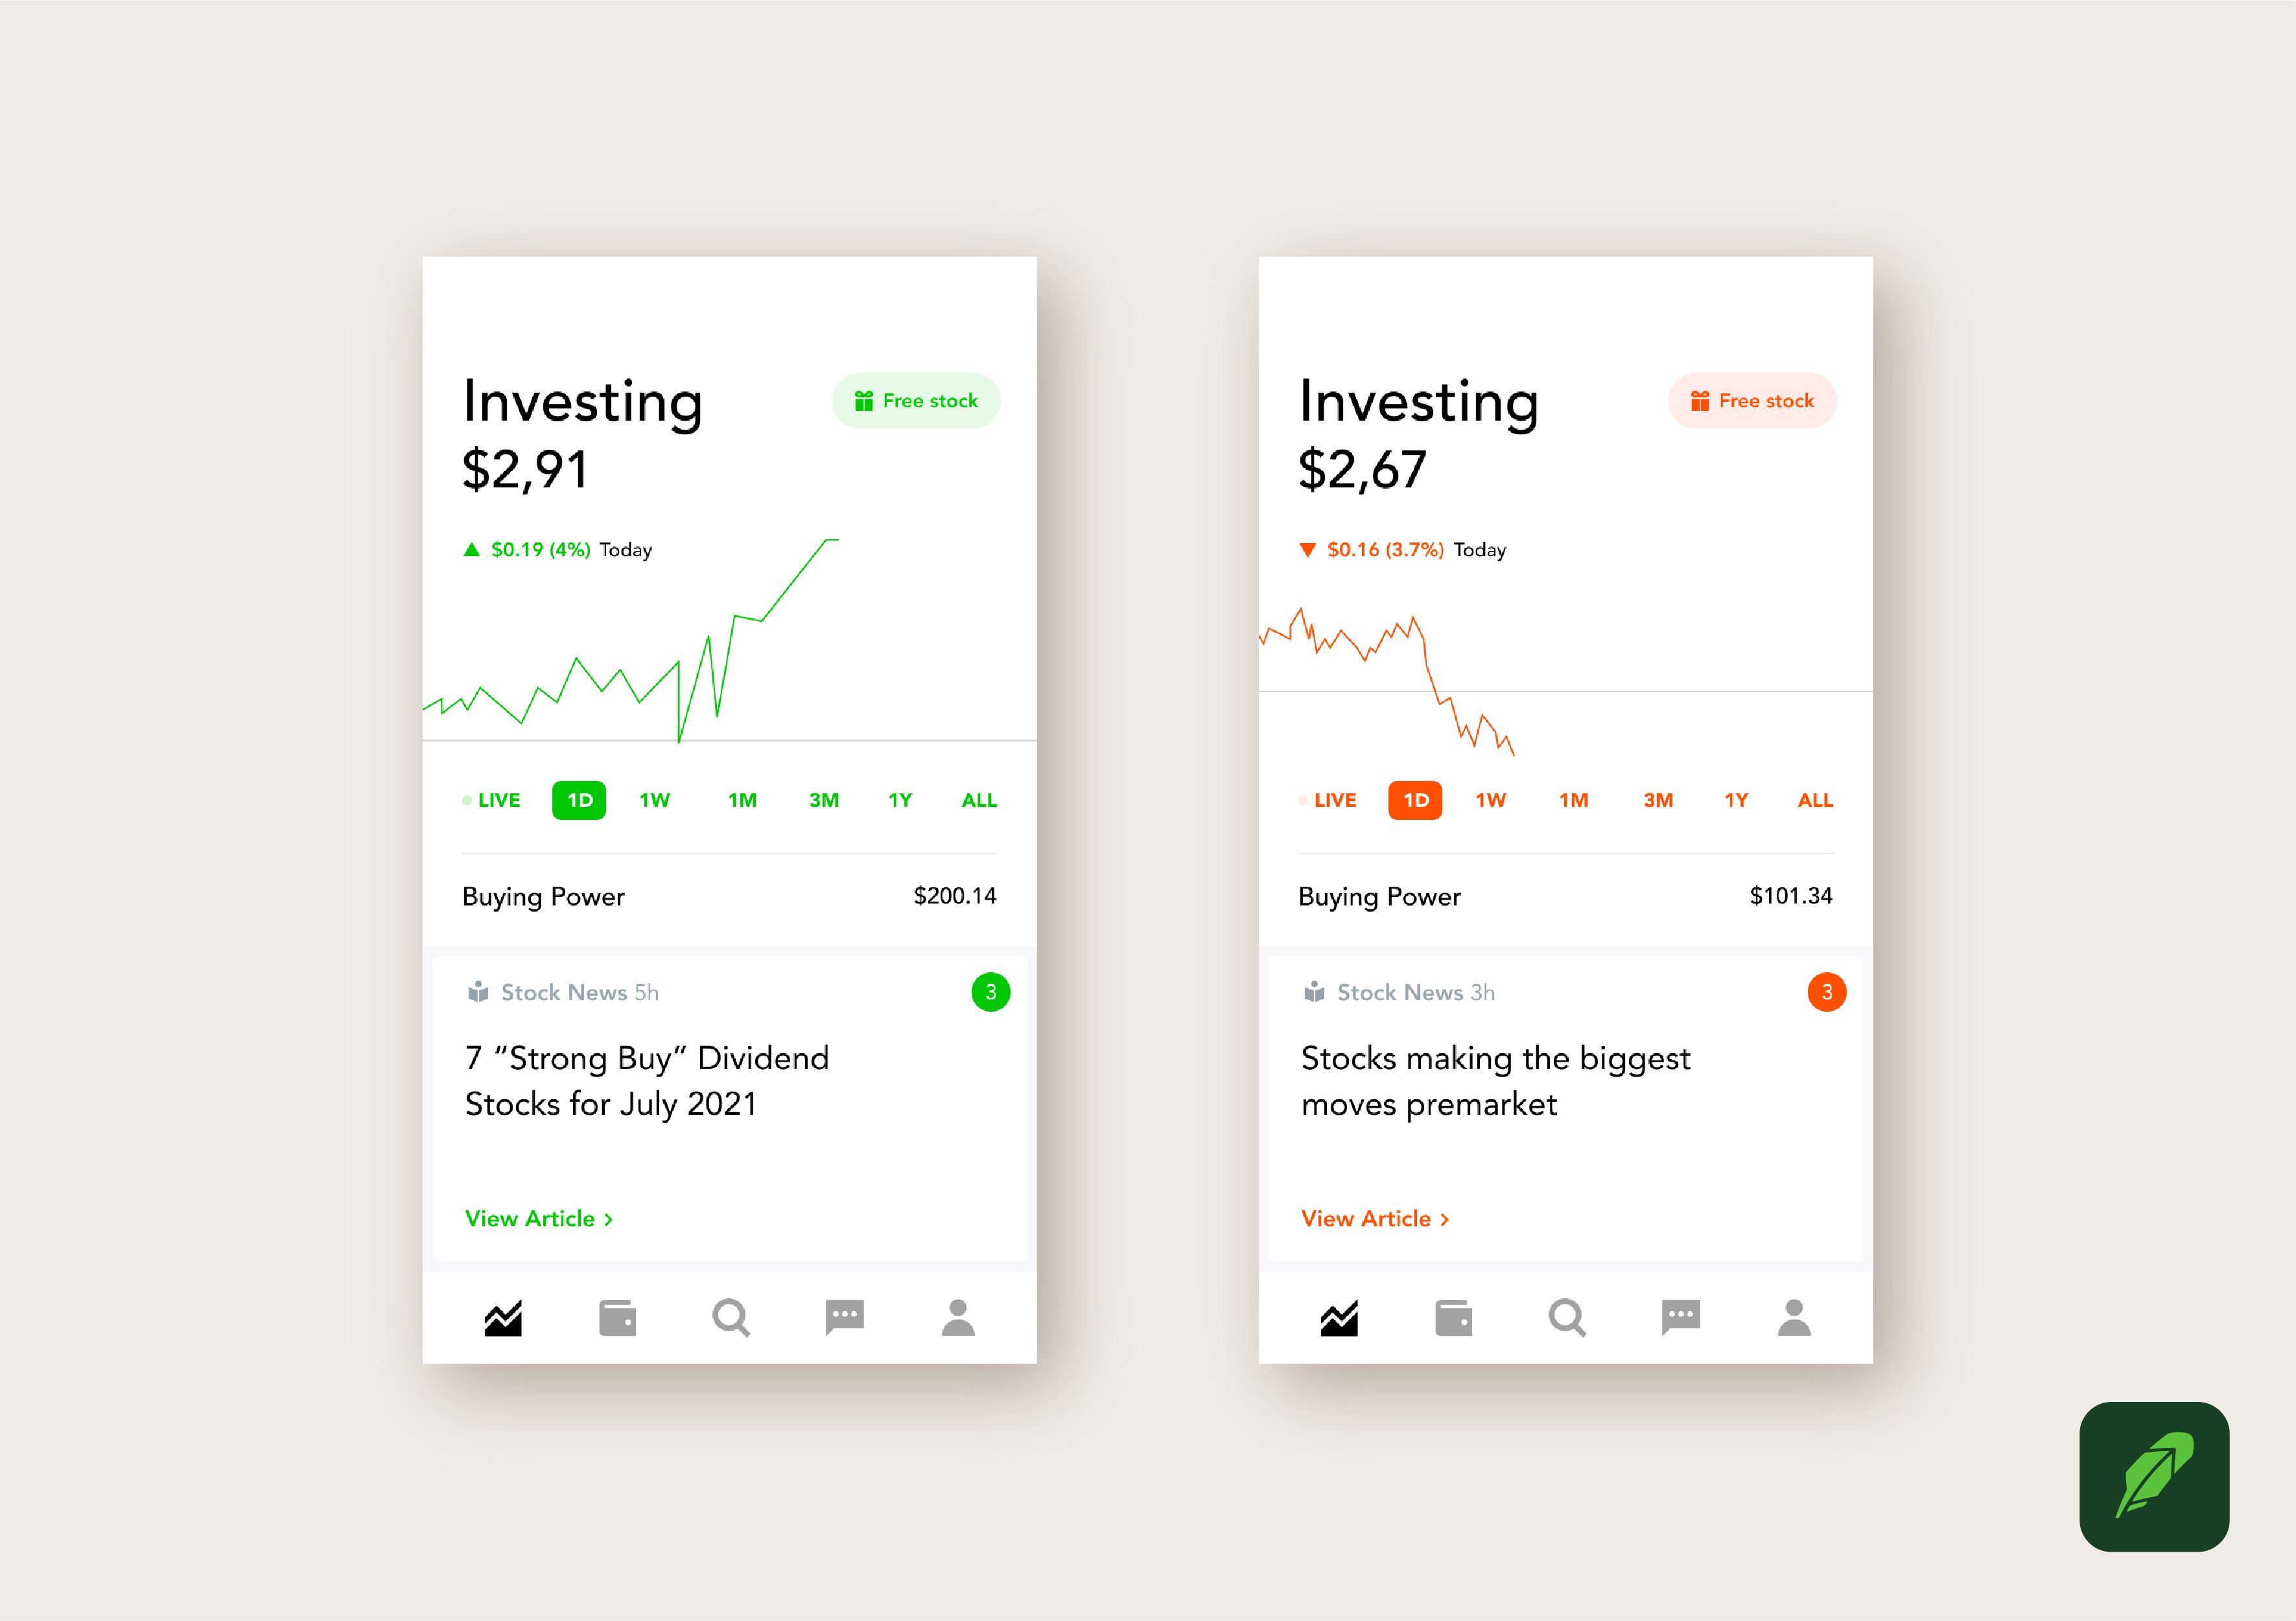 Robinhood: Stocks & Crypto – Apps no Google Play